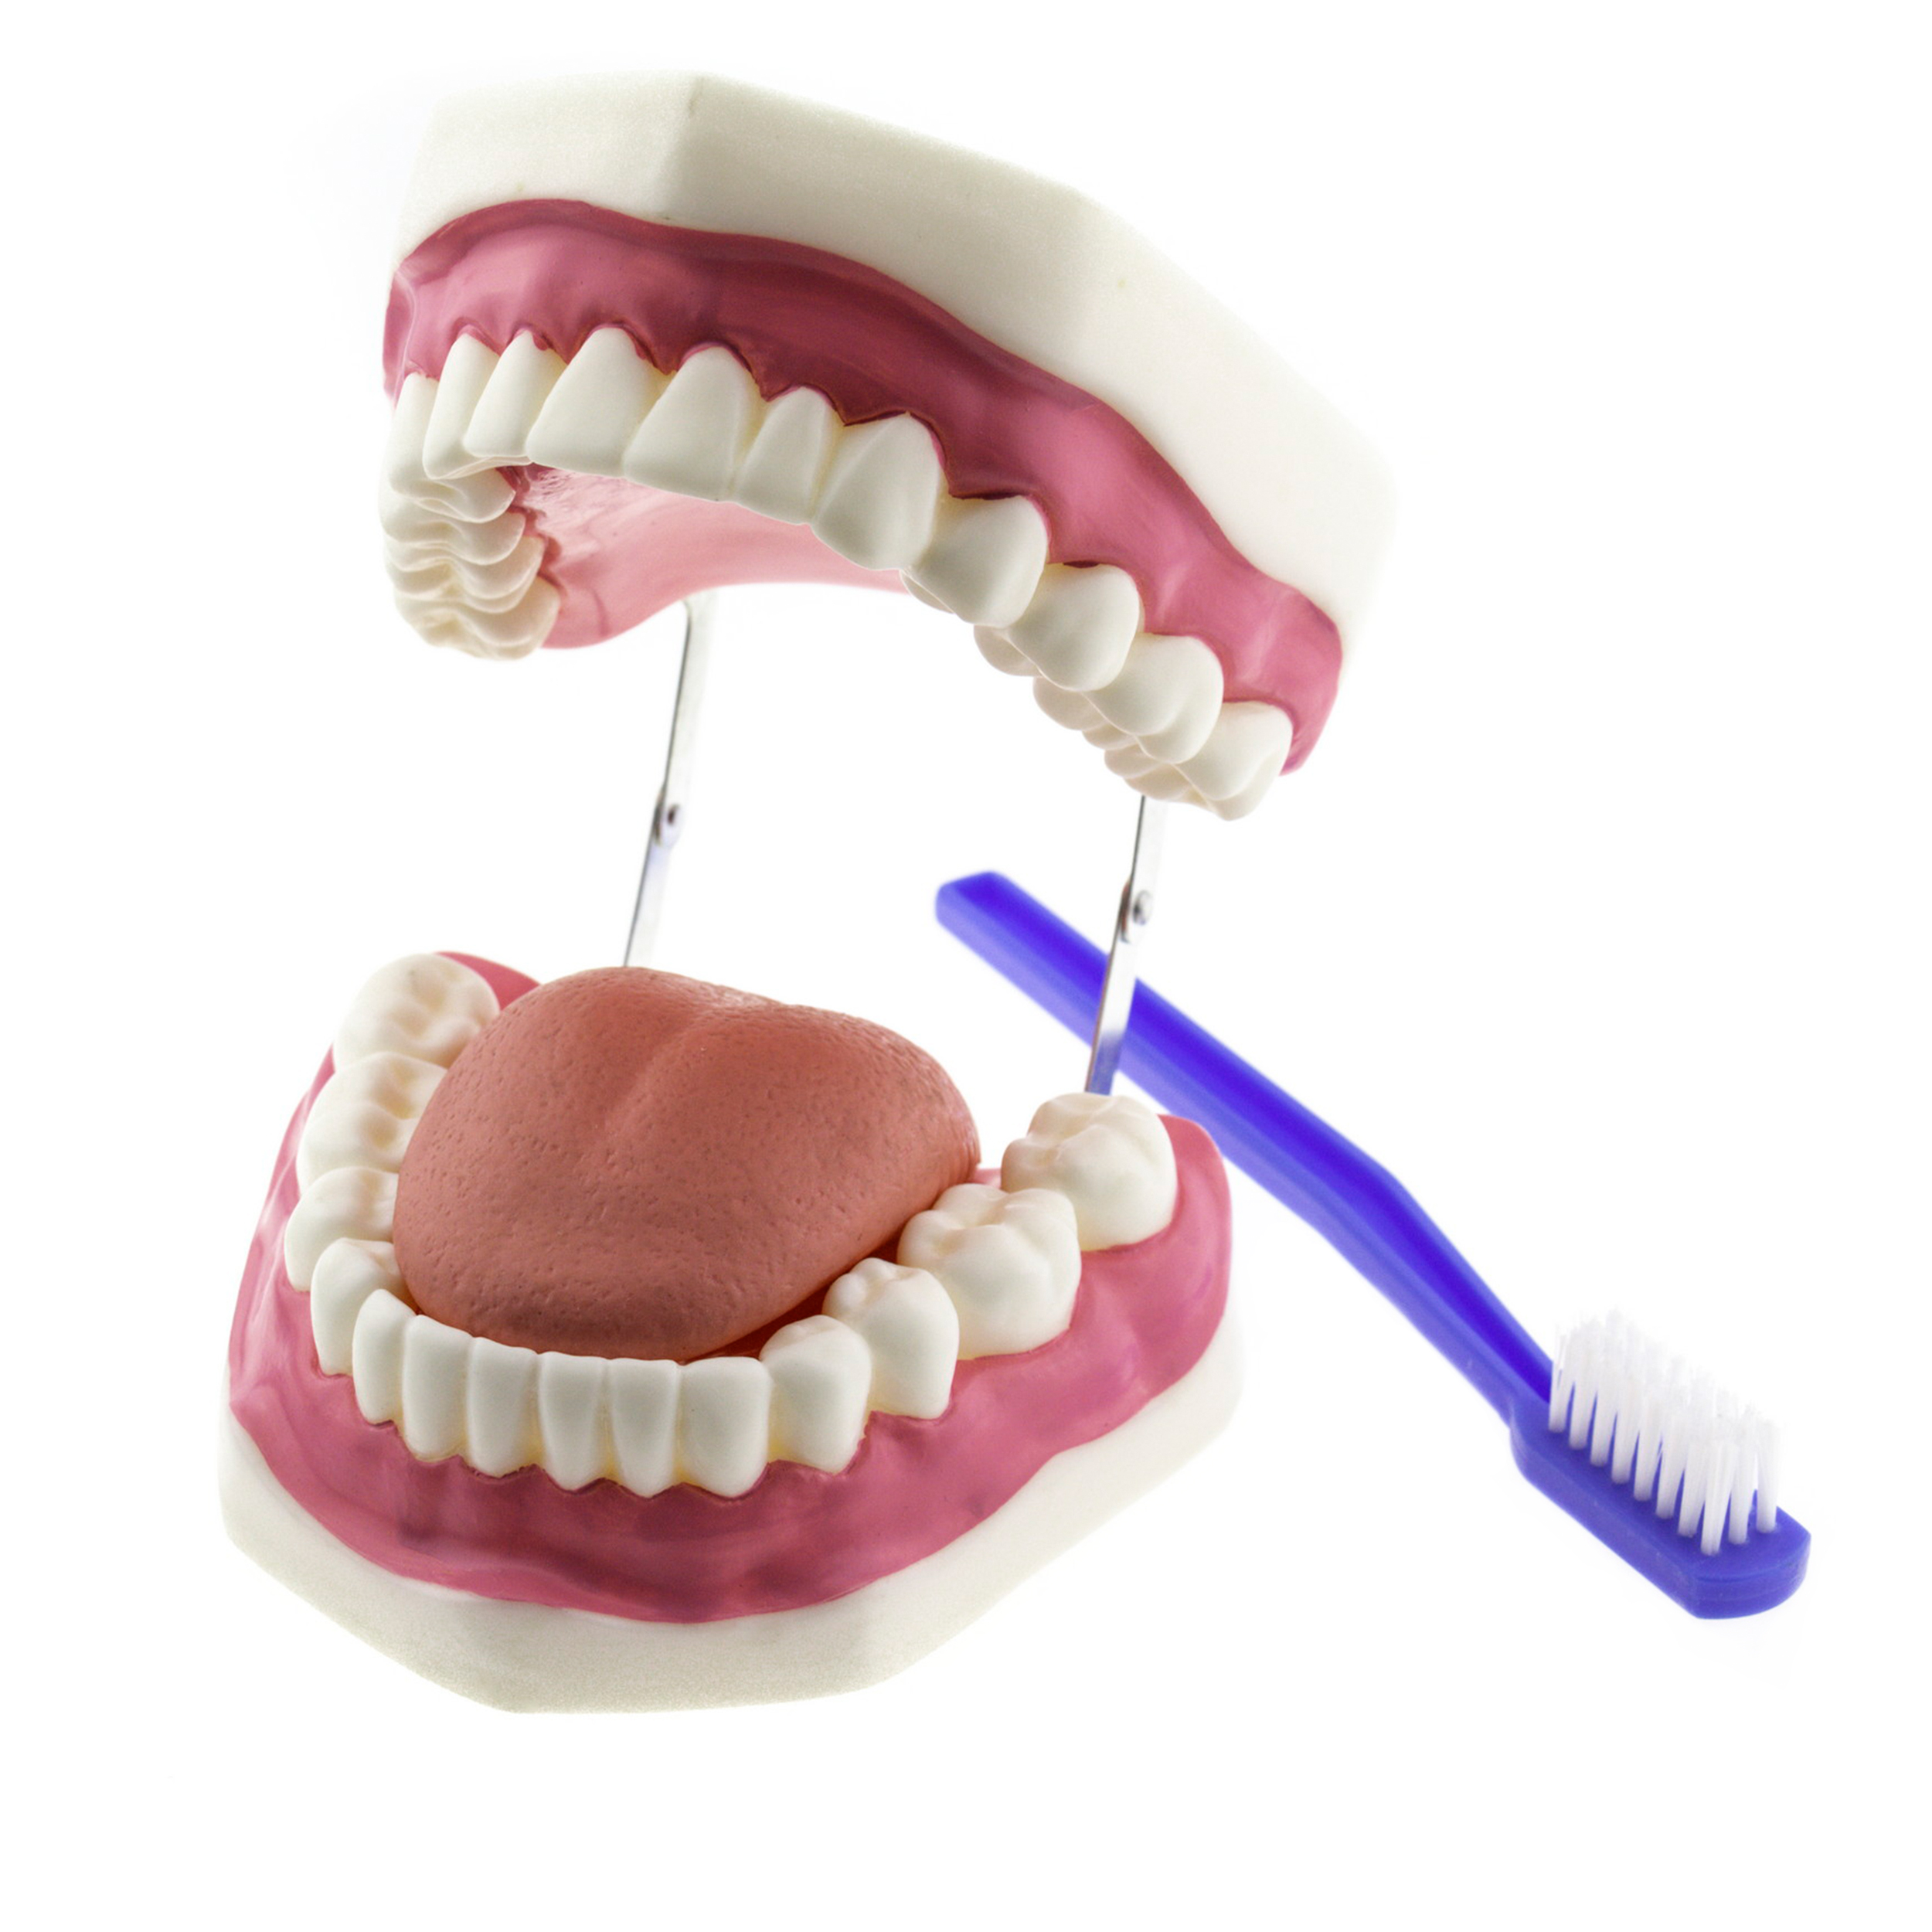 Гігієна зубів. Верхня та нижня щелепи людини